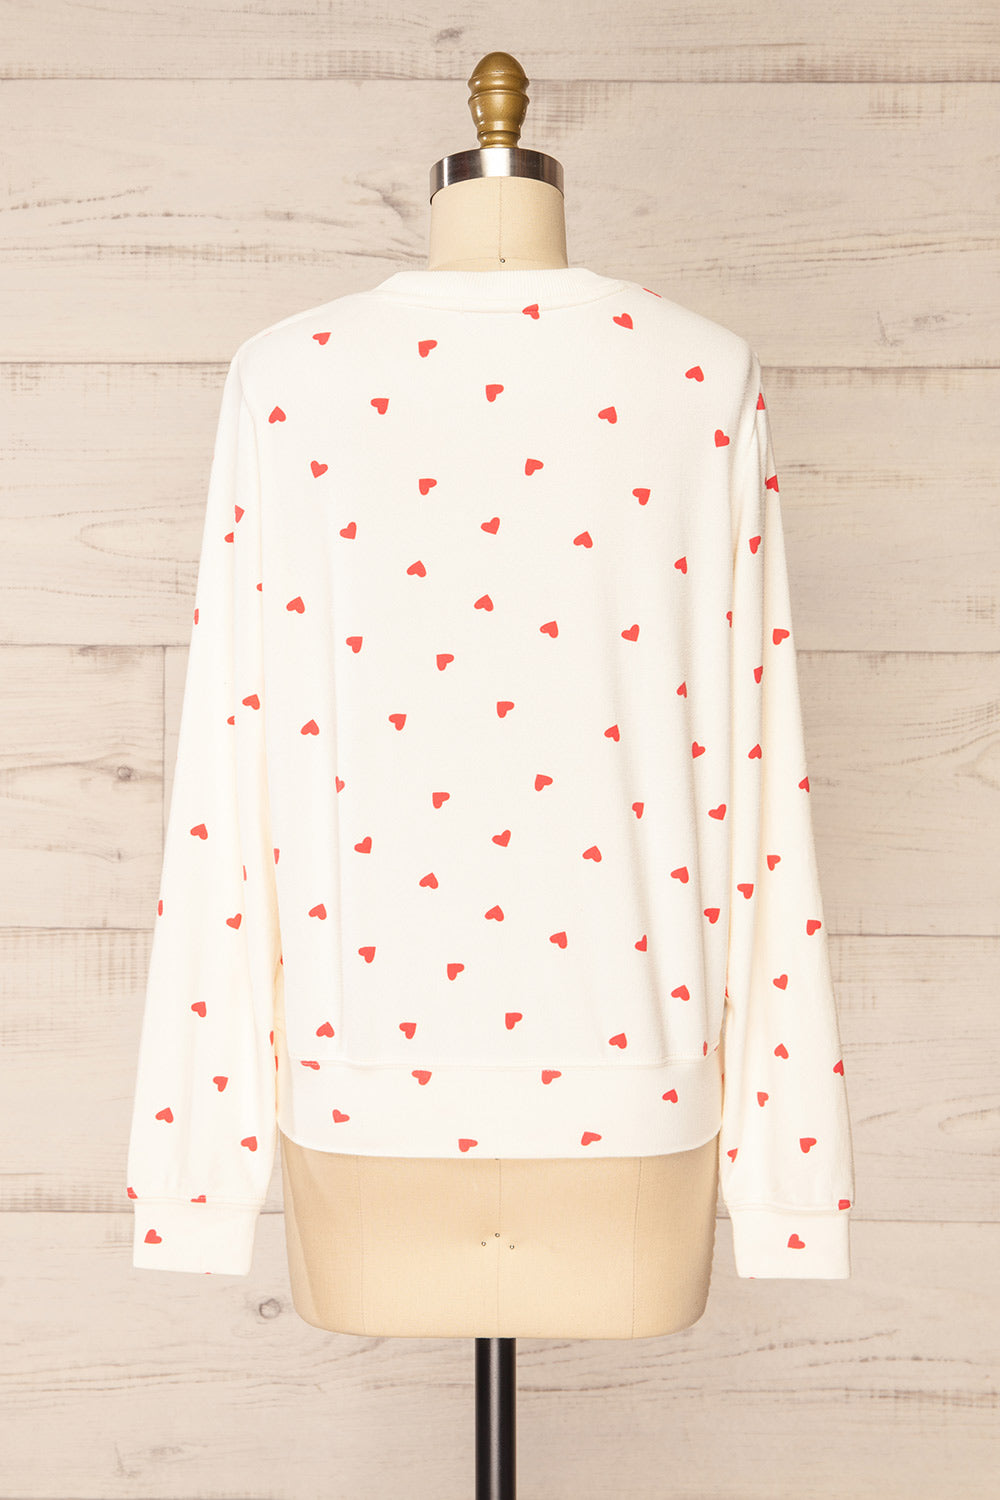 Allorah Ivory Sweater w/ Heart Pattern | La petite garçonne back view